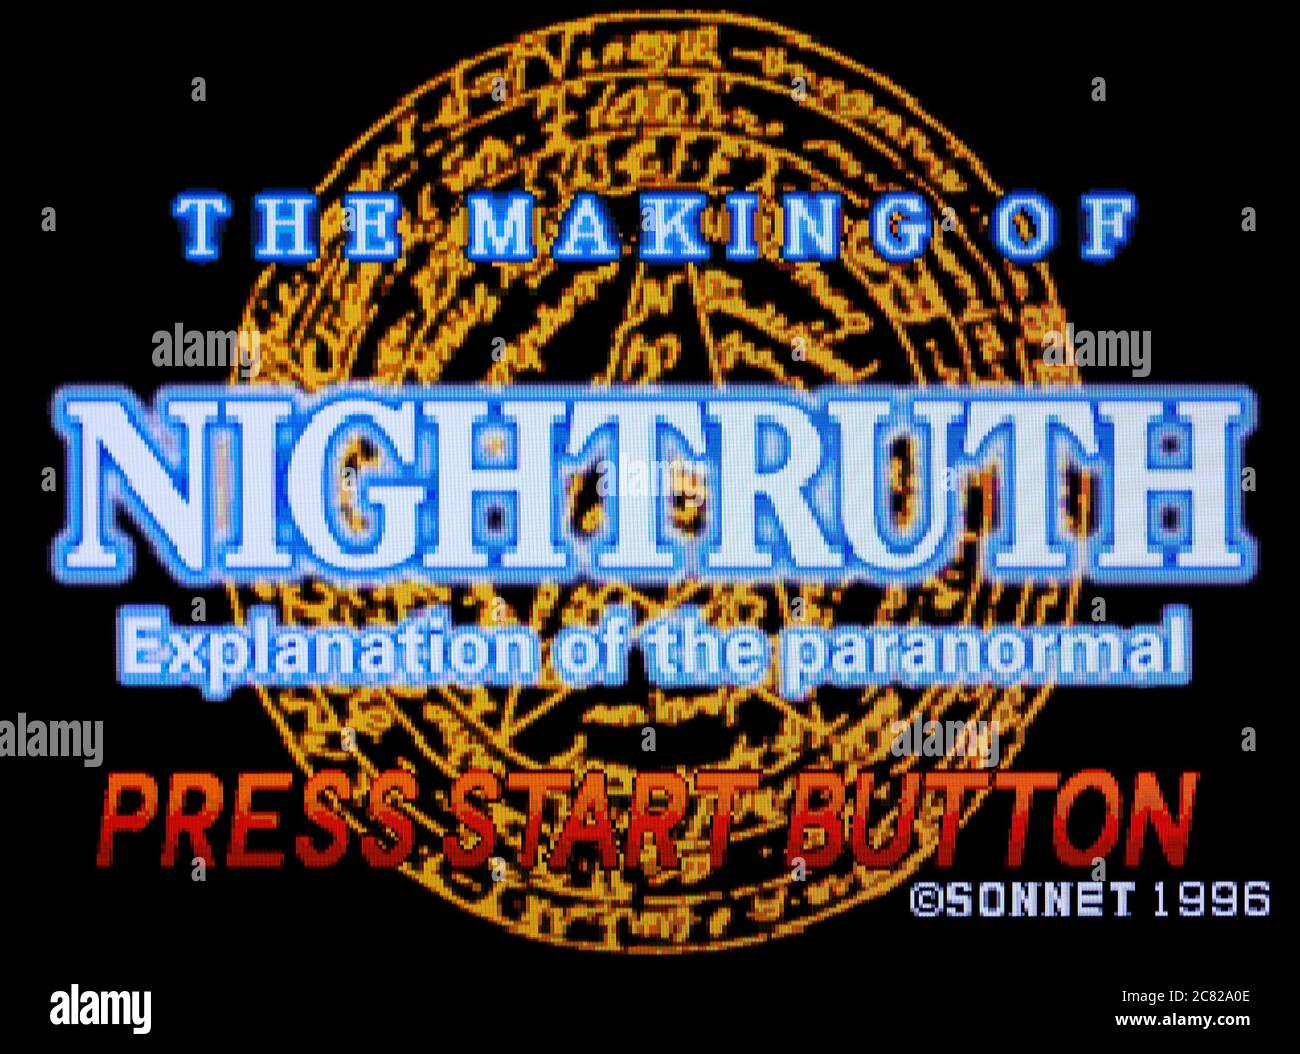 Nighttruth - Erklärung des Paranormalen - das Making of Nighttruth - Sega Saturn Videogame - nur zur redaktionellen Verwendung Stockfoto